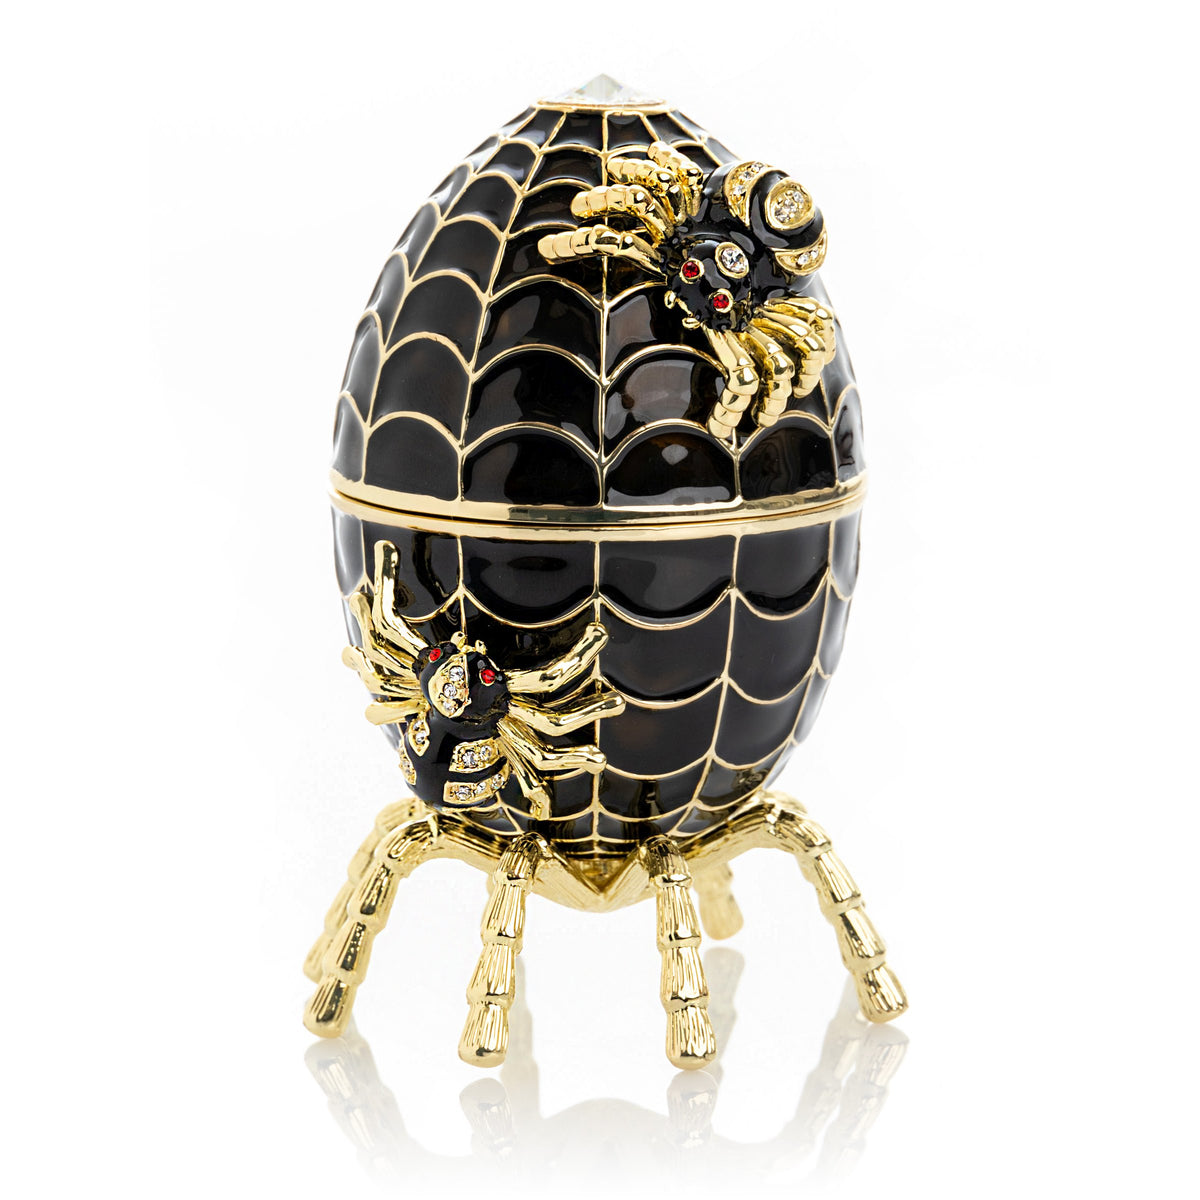 Schwarzes Faberge-Ei, Spinnennetz, Dekoration, Musik spielendes Ei